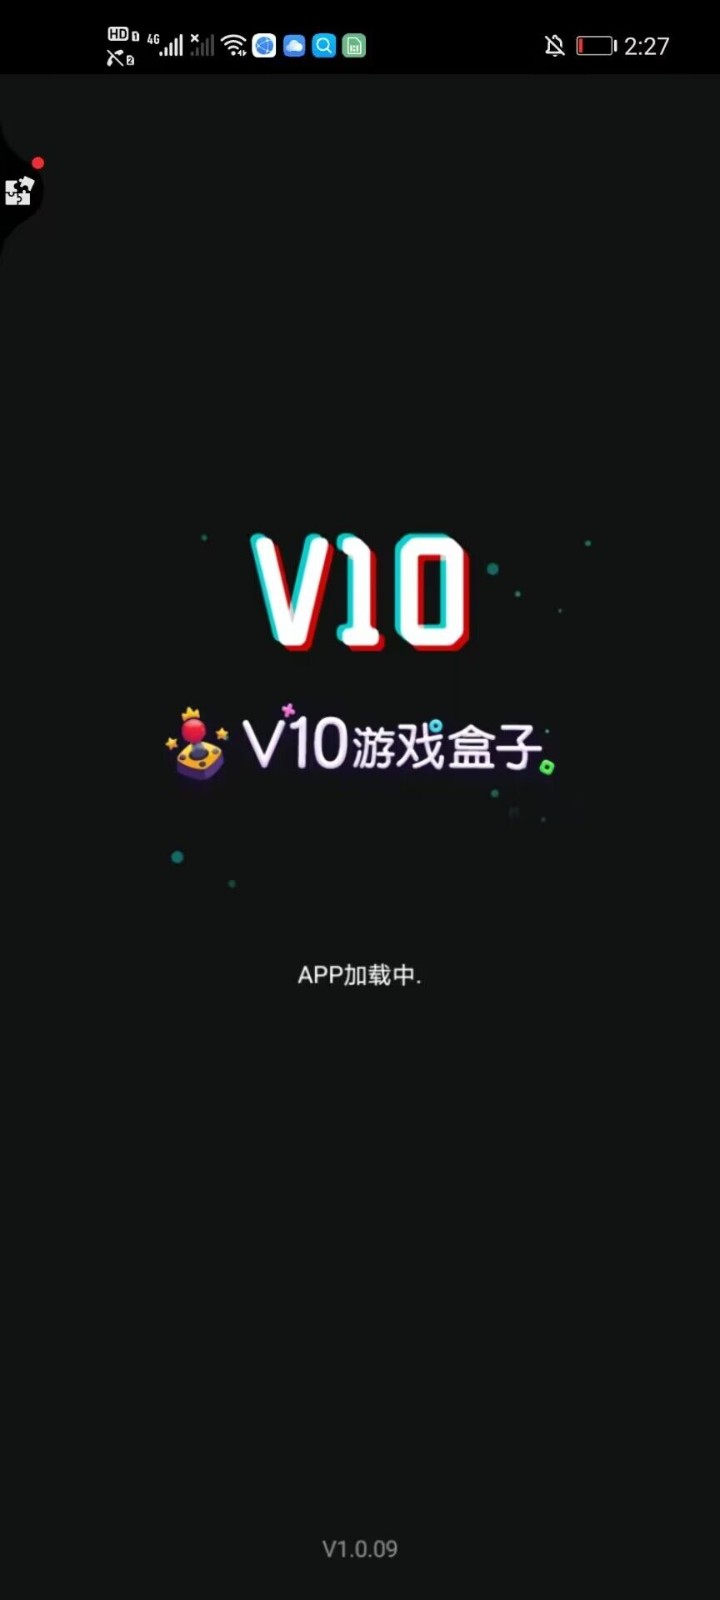 V10游戏盒子v1.0.09